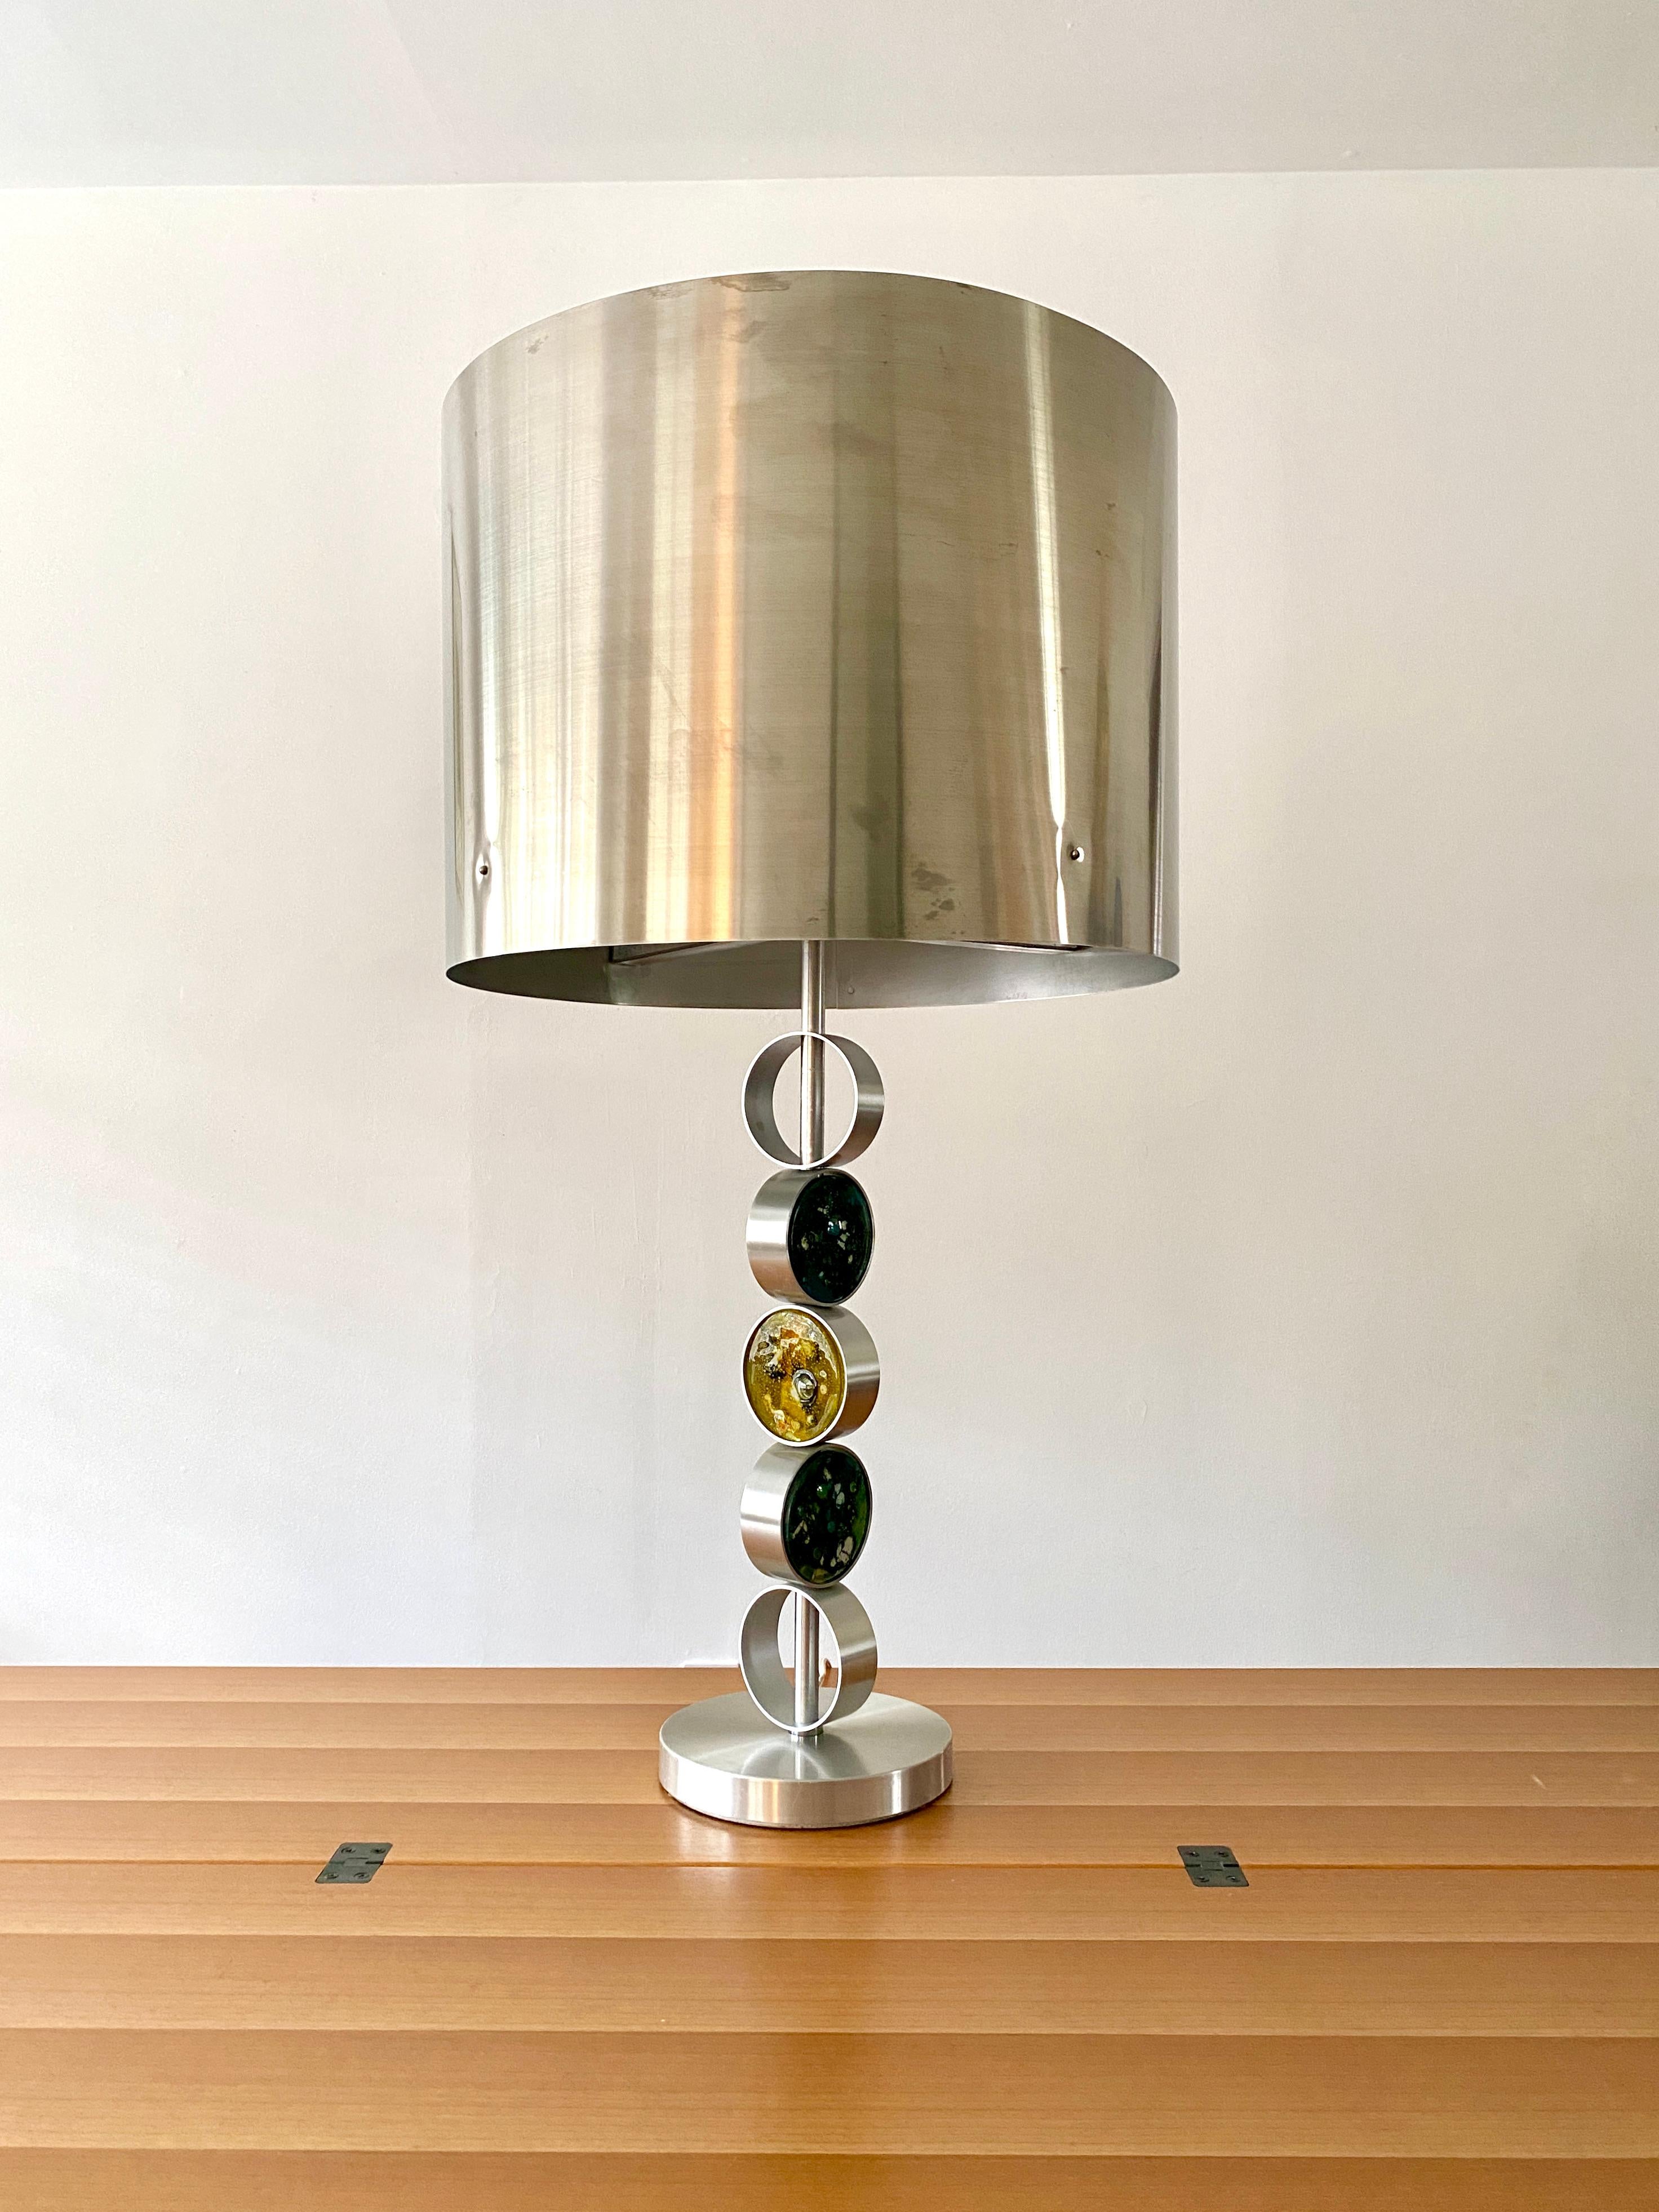 Une grande lampe de table en aluminium et en acier avec trois rondelles de verre d'art par la designer finlandaise Nanny Still.  La lampe a été fabriquée par RAAK Lighting Company aux Pays-Bas, conçue en 1972 et porte le numéro de modèle D2095.  La